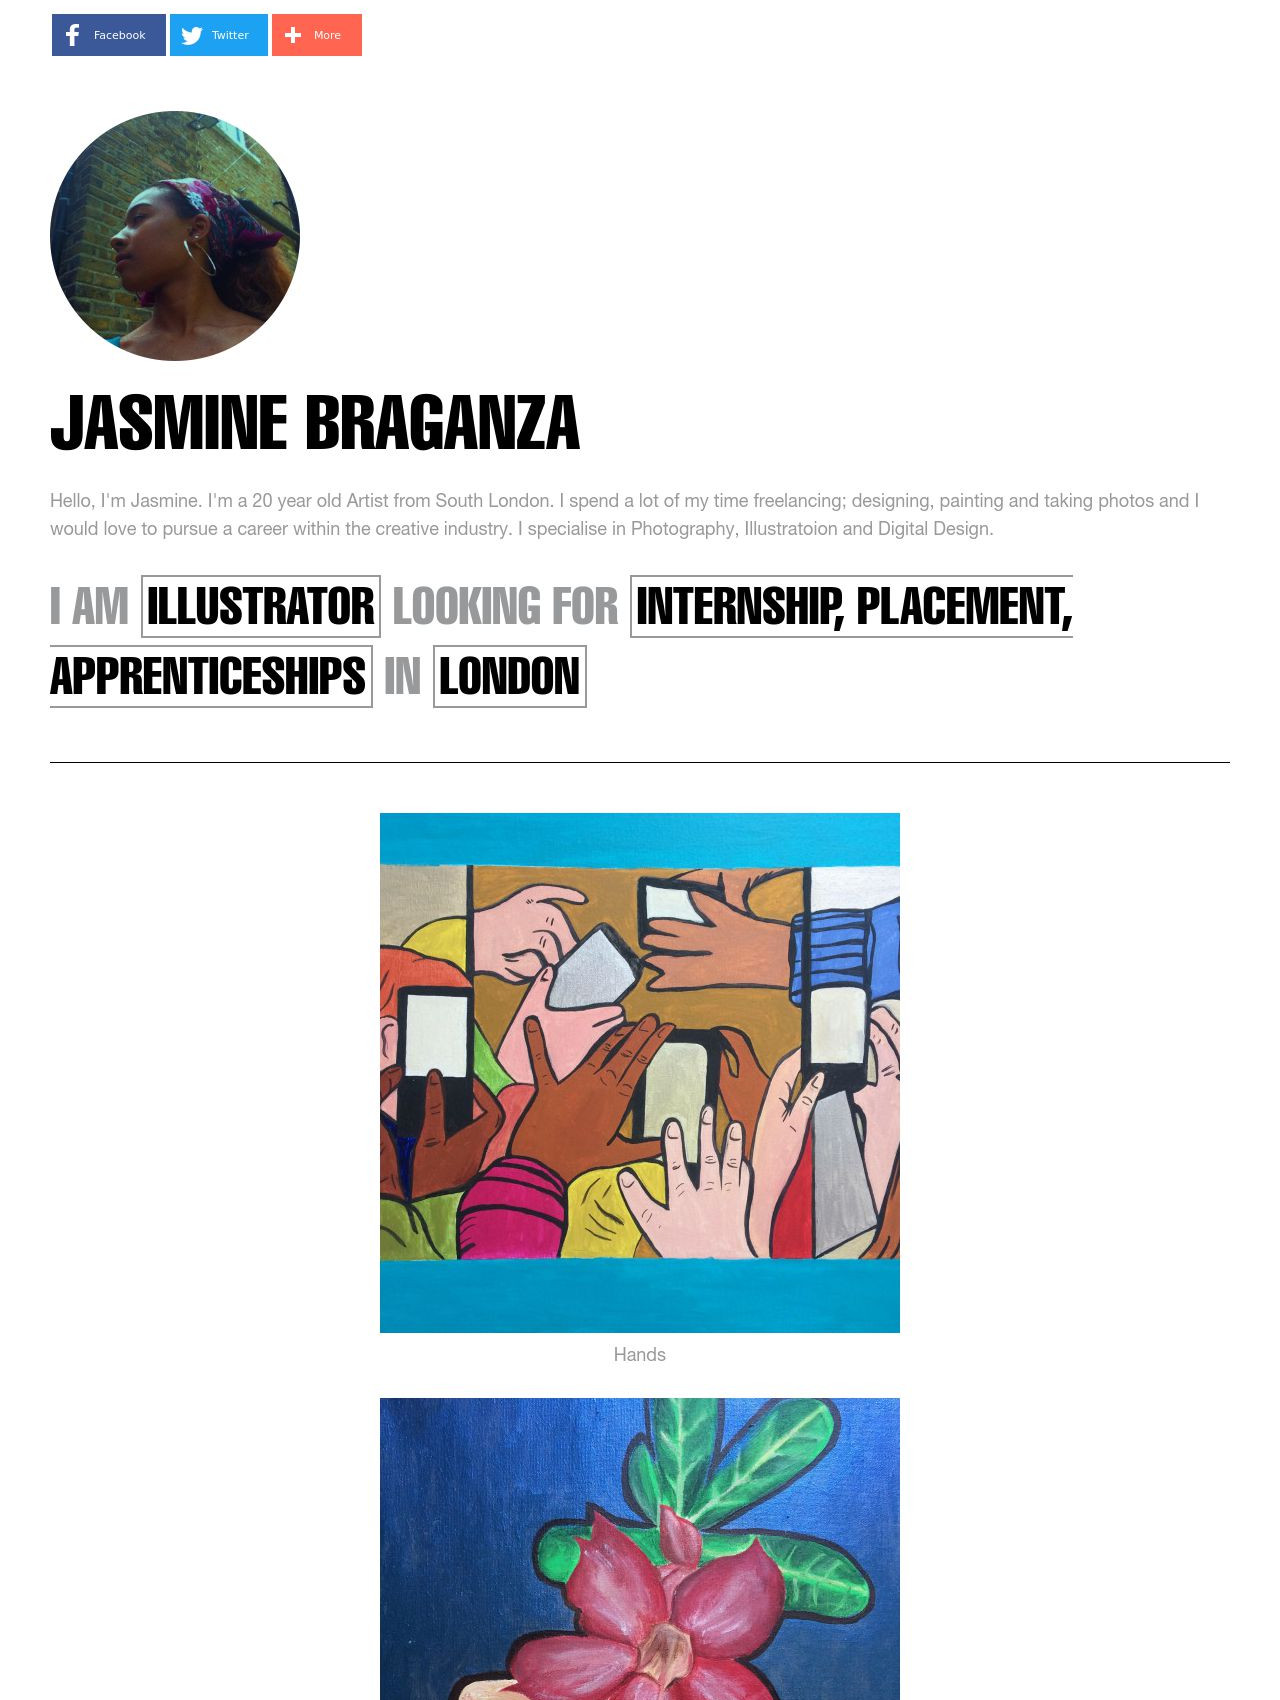 Jasmine Braganza